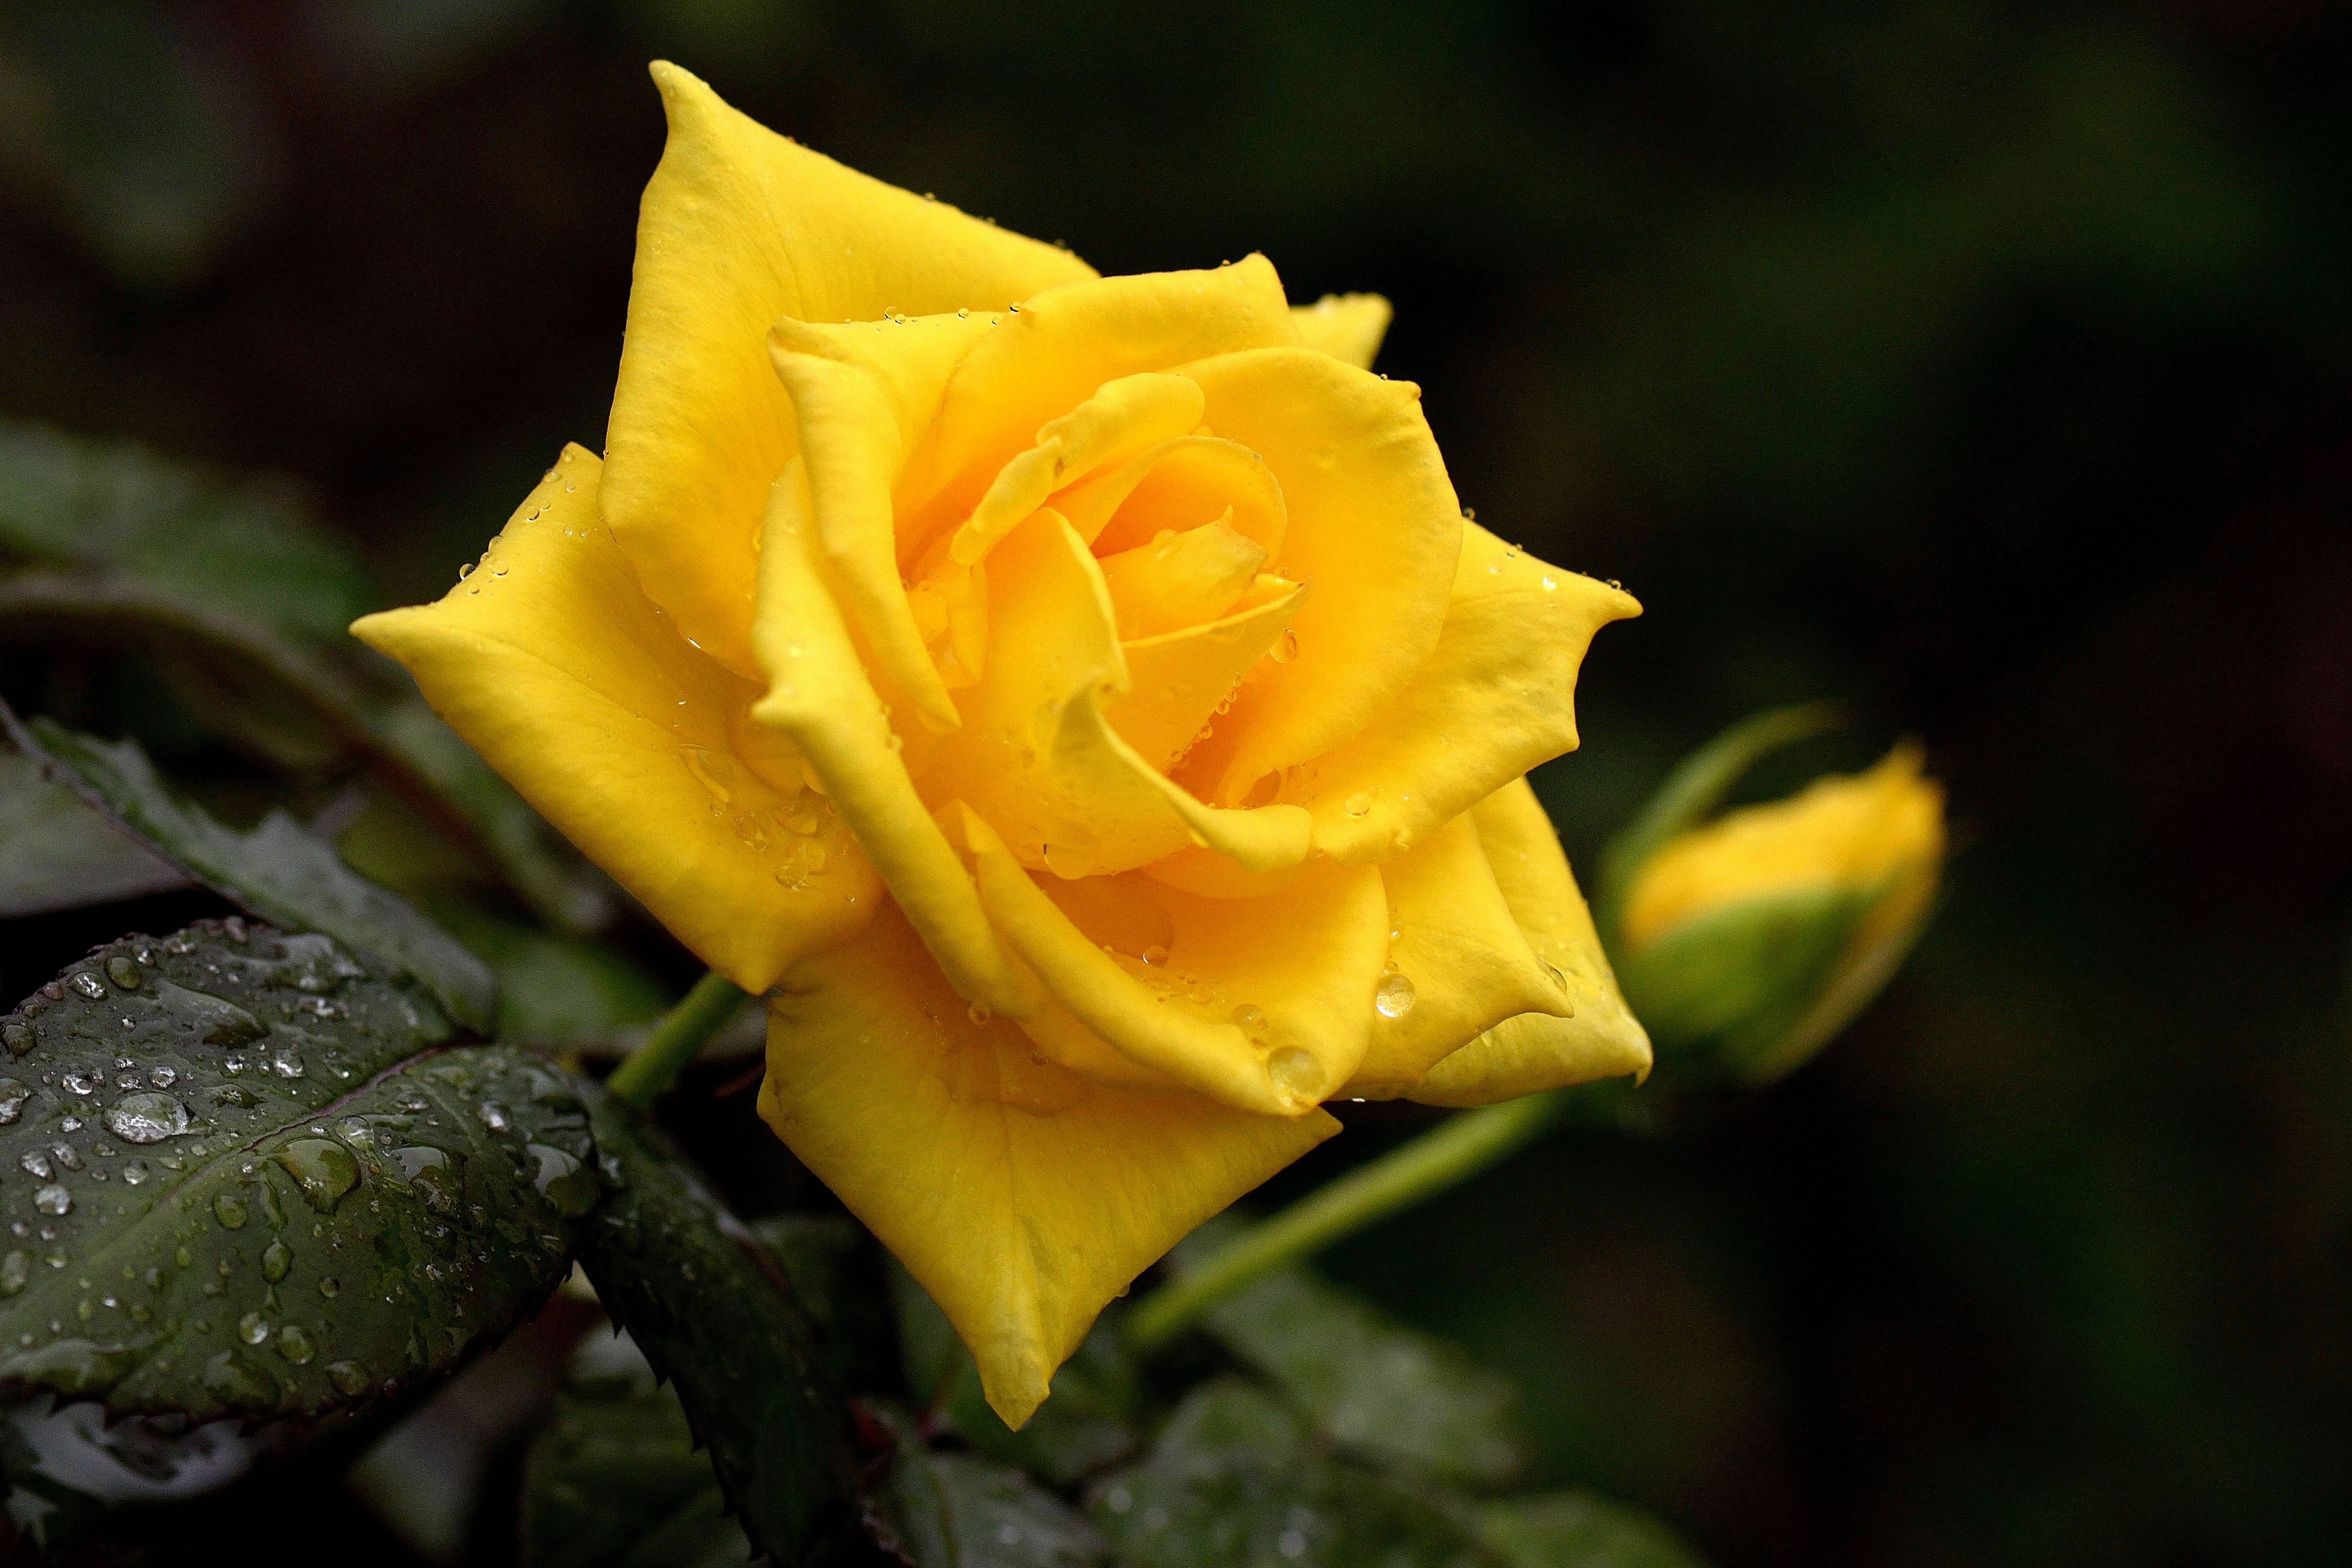 Обои желтая роза флора роза - бесплатные картинки на Fonwall